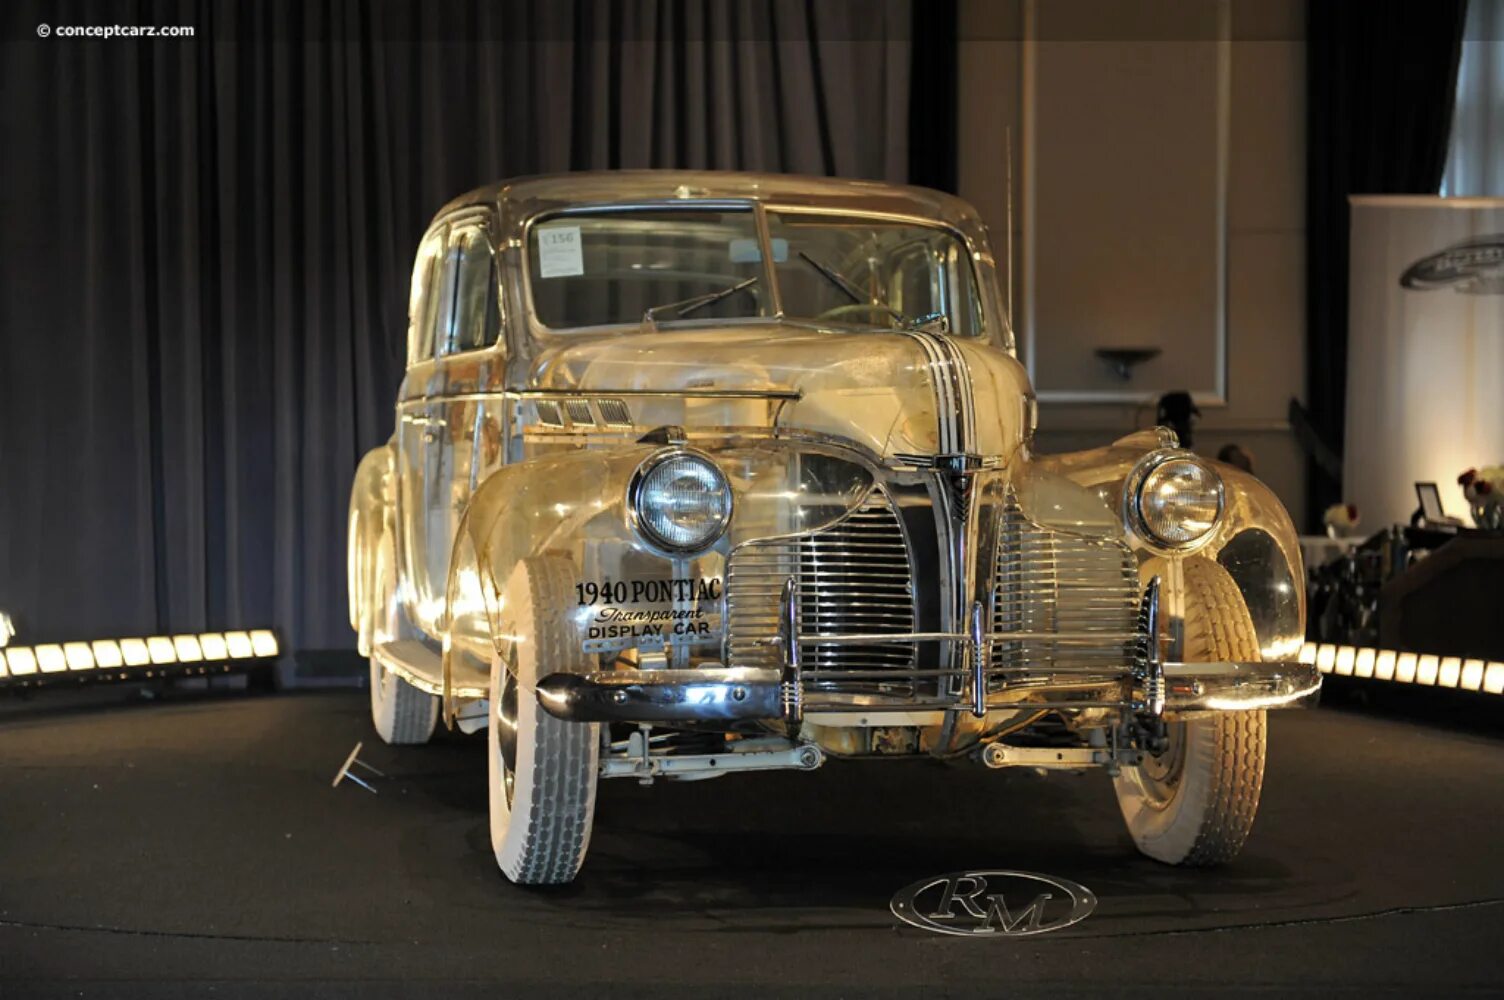 1939 Понтиак Делюкс. Pontiac Deluxe 1940. Pontiac Deluxe Six 1940 Ghost. Pontiac Deluxe Six. George's cars